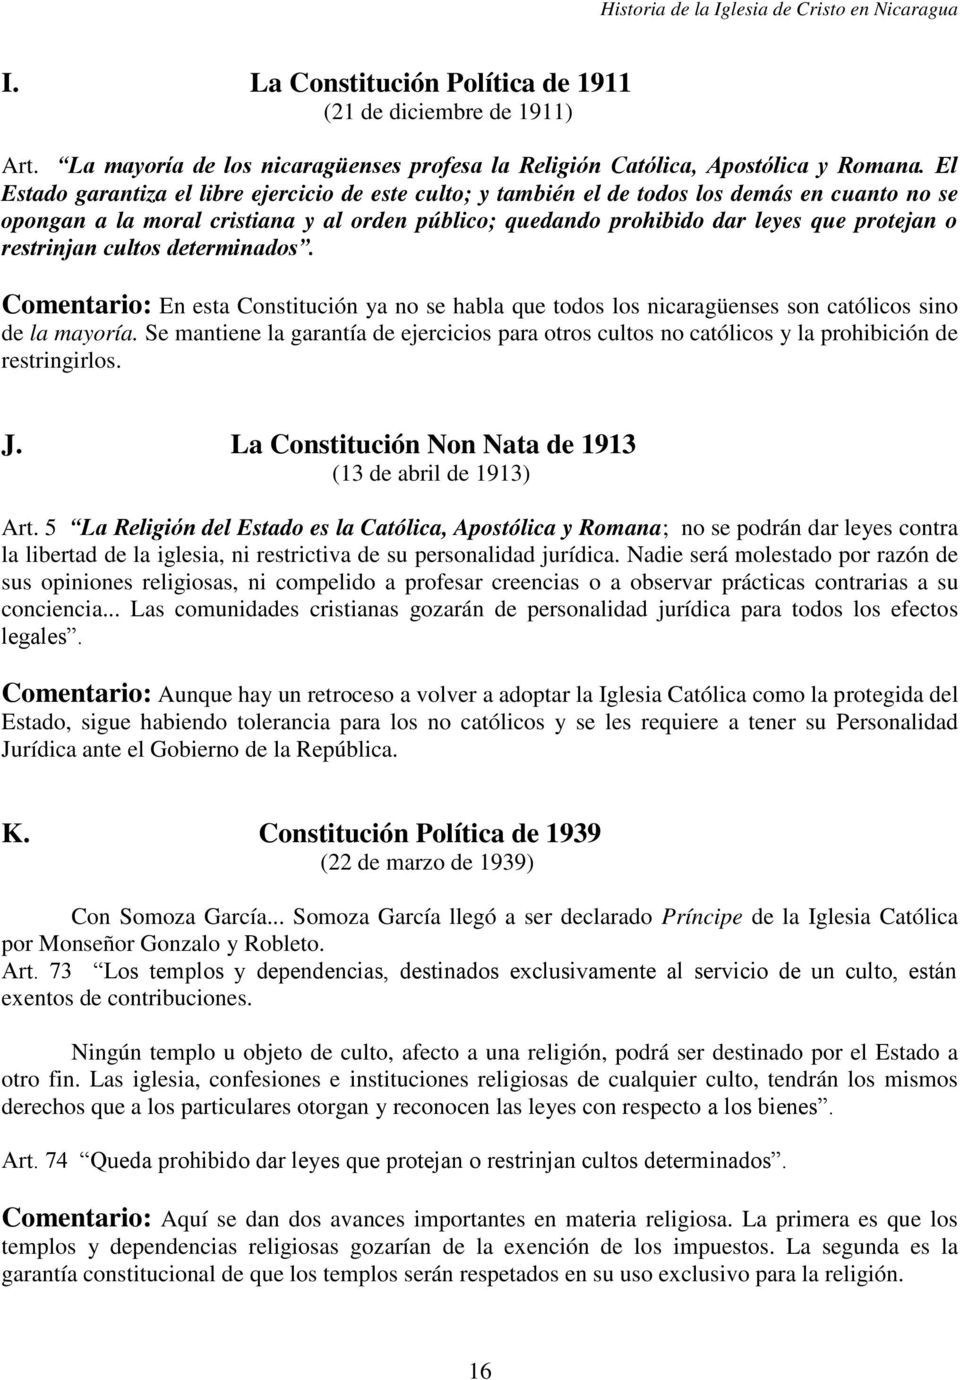 restrinjan cultos determinados. Comentario: En esta Constitución ya no se habla que todos los nicaragüenses son católicos sino de la mayoría.